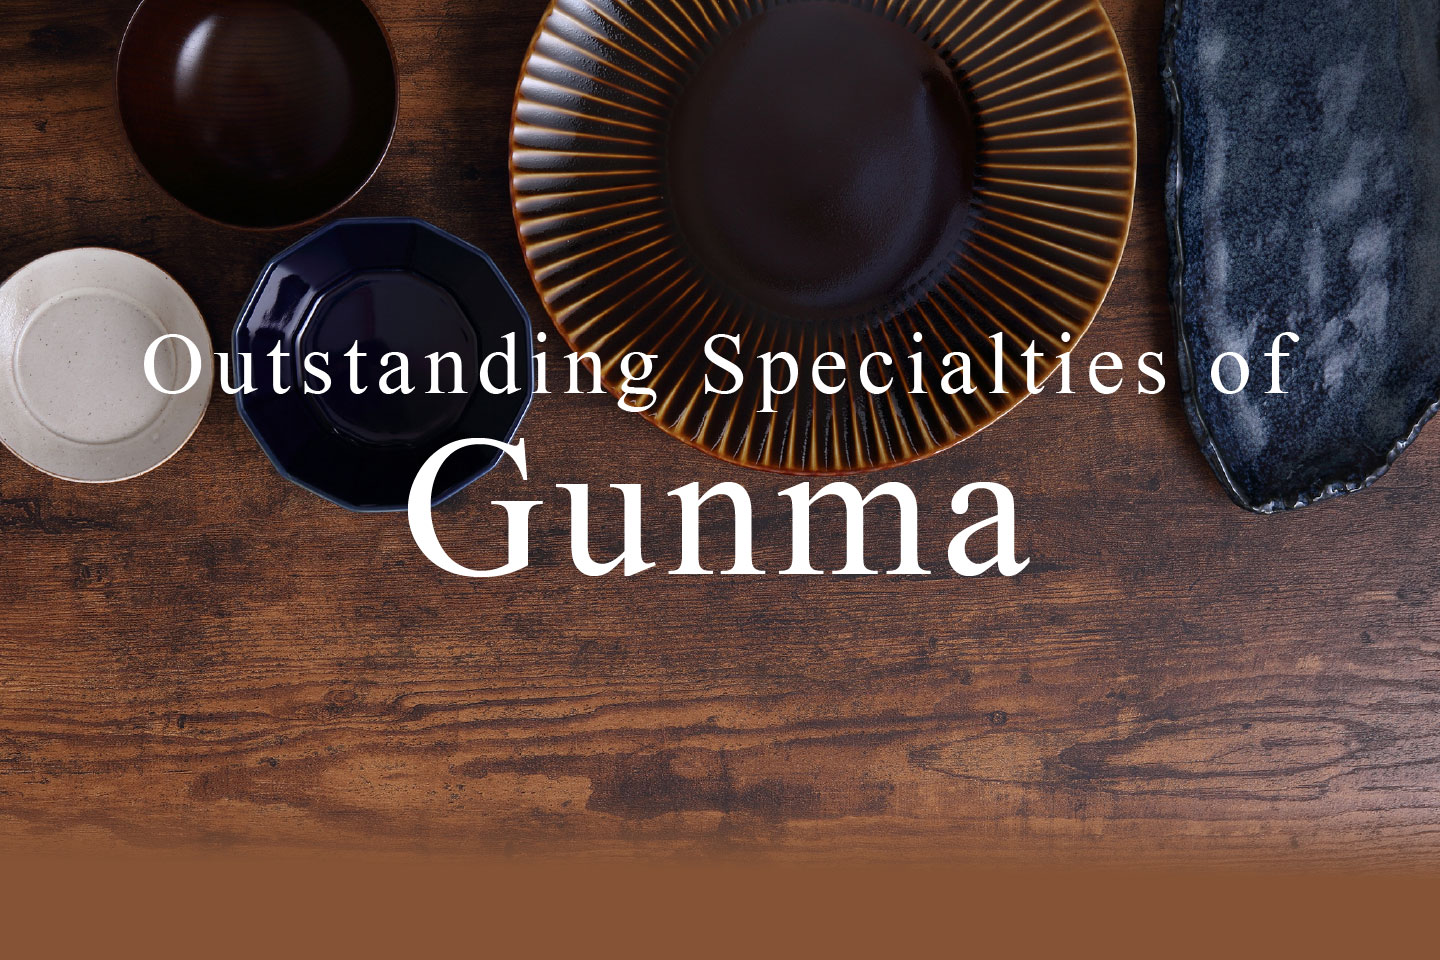 Outstanding Specialties of Gunma